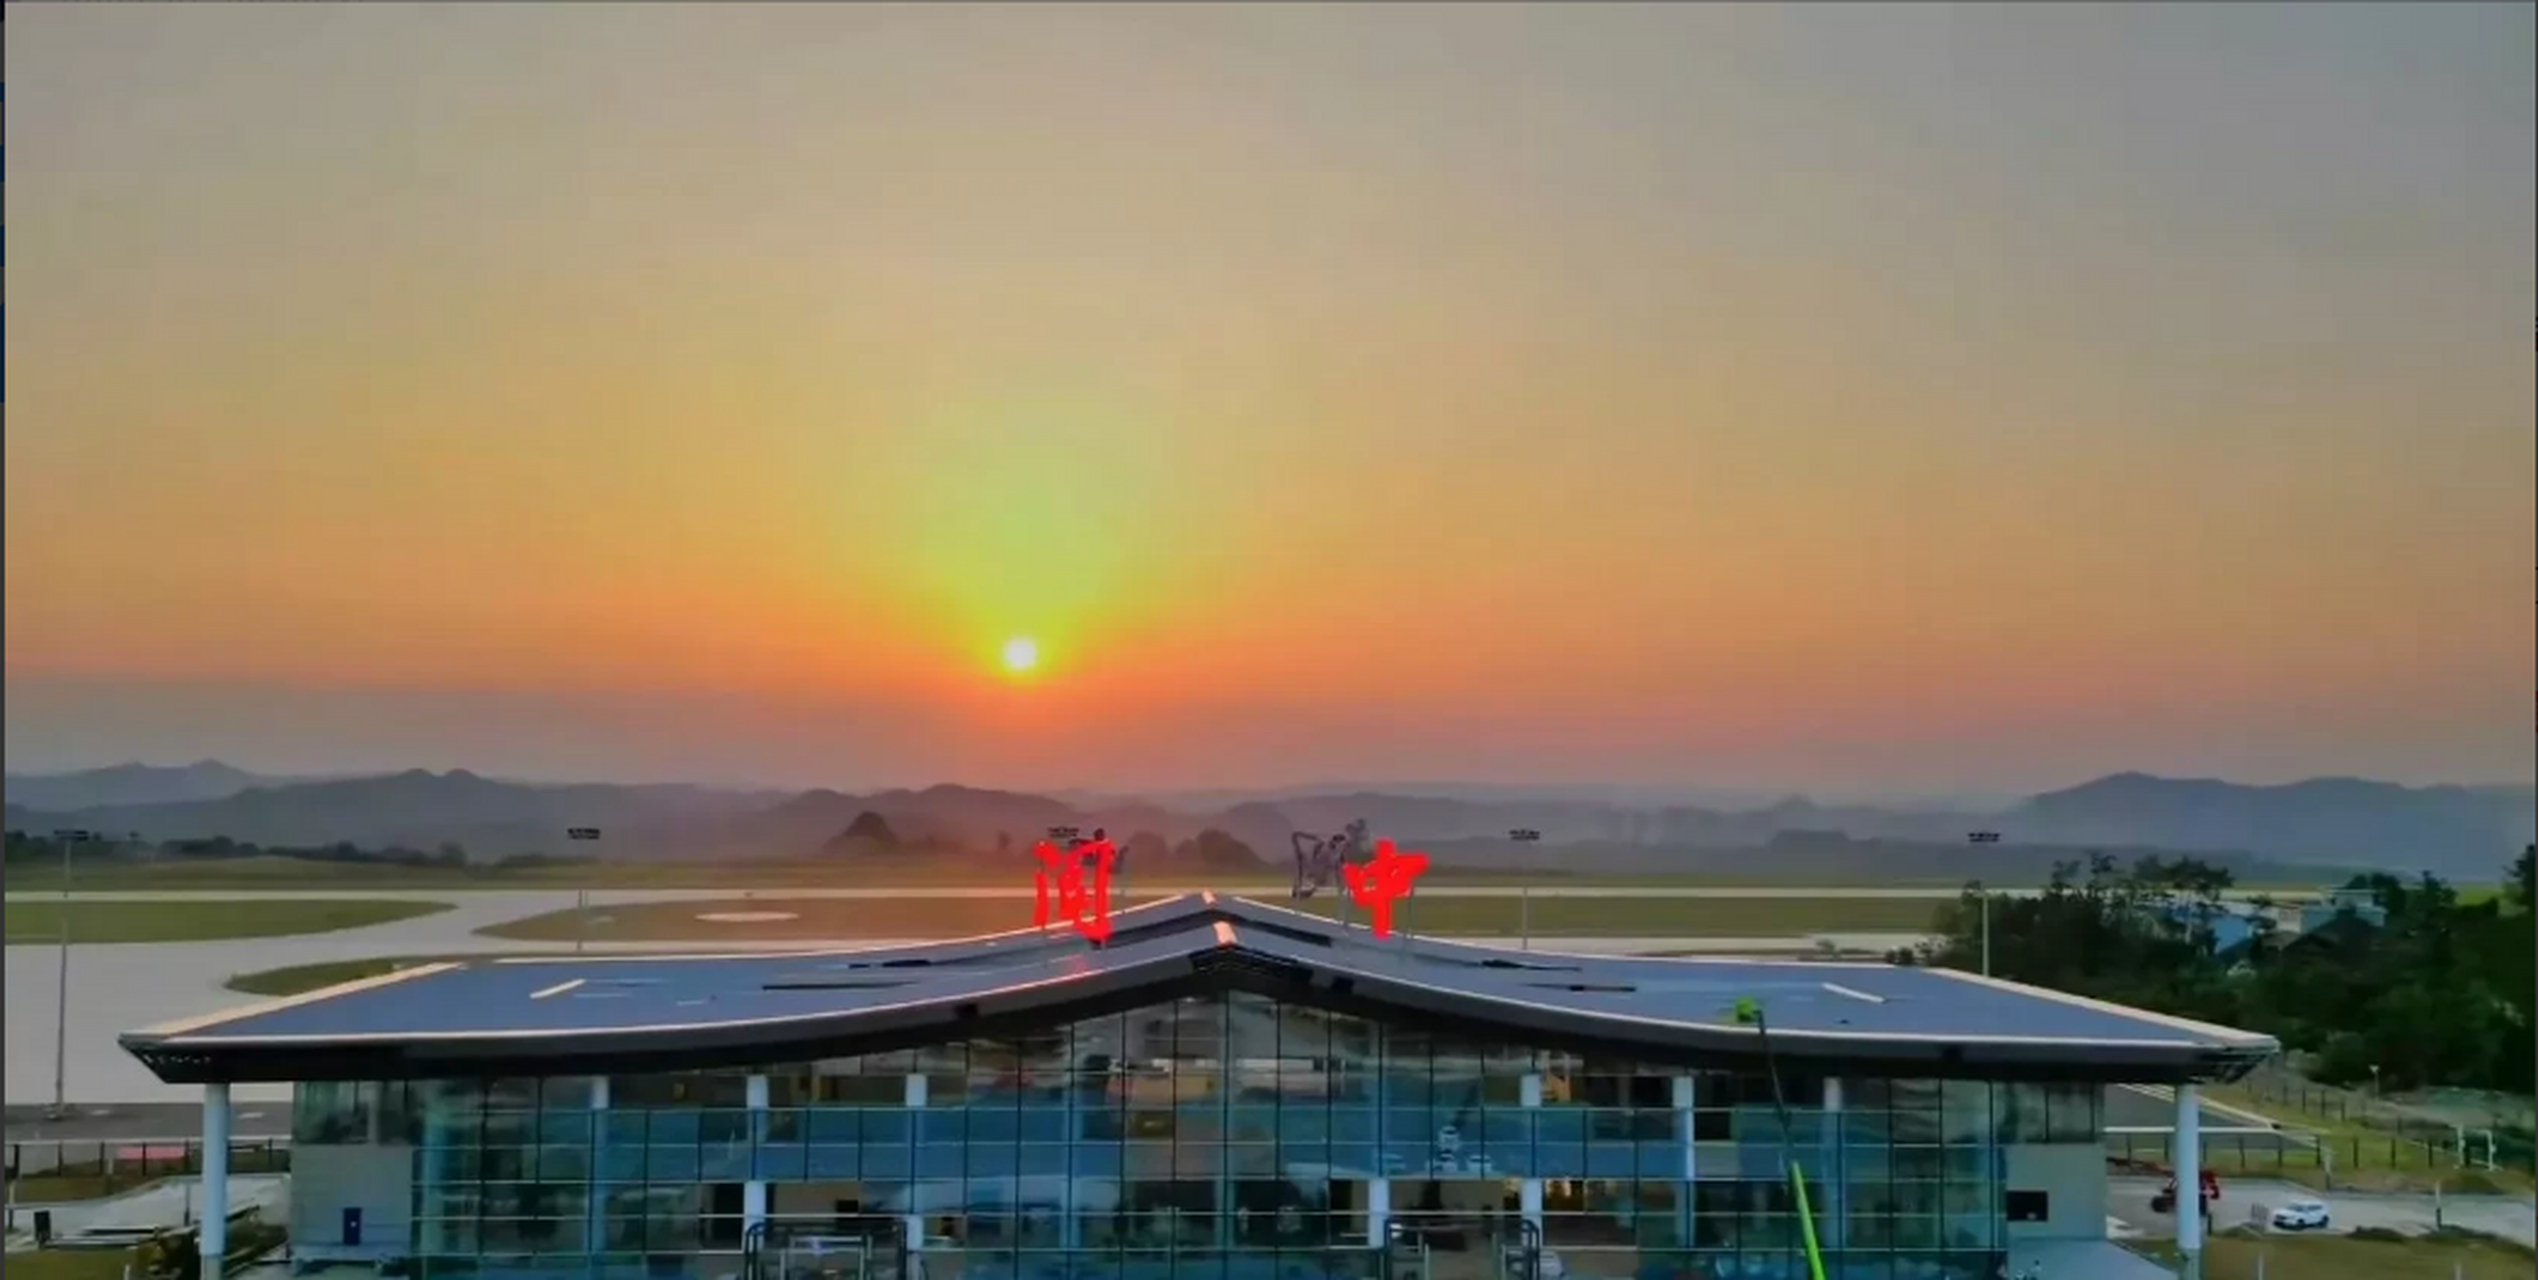 四川阆中机场建设已经接近尾声,航站楼正在进行最后的扫尾阶段,两座